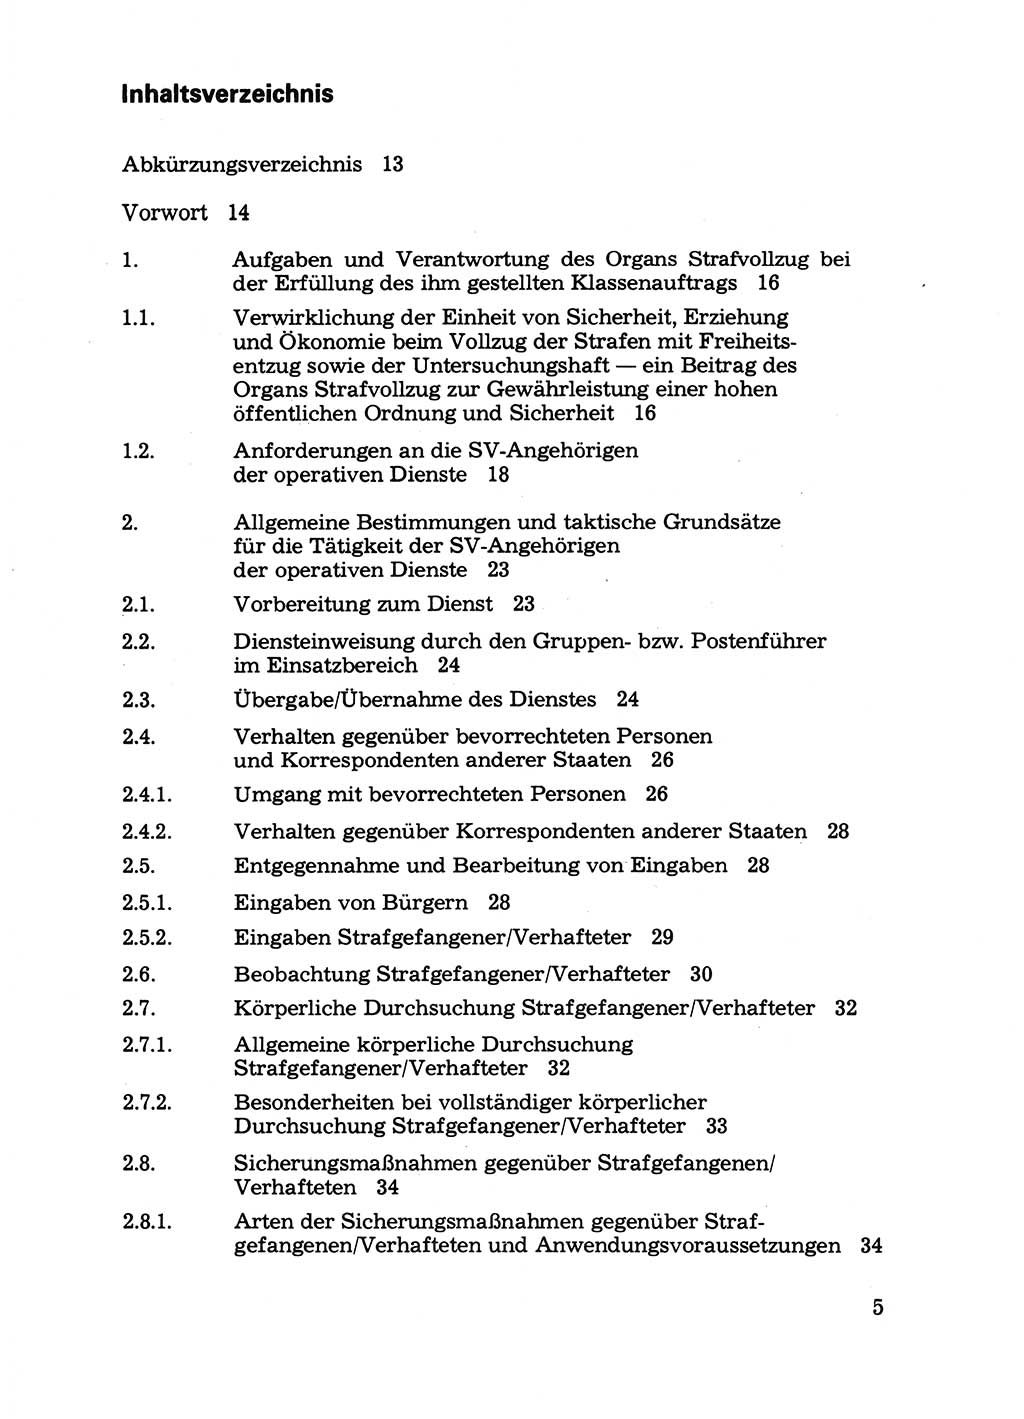 Handbuch für operative Dienste, Abteilung Strafvollzug (SV) [Ministerium des Innern (MdI) Deutsche Demokratische Republik (DDR)] 1981, Seite 5 (Hb. op. D. Abt. SV MdI DDR 1981, S. 5)